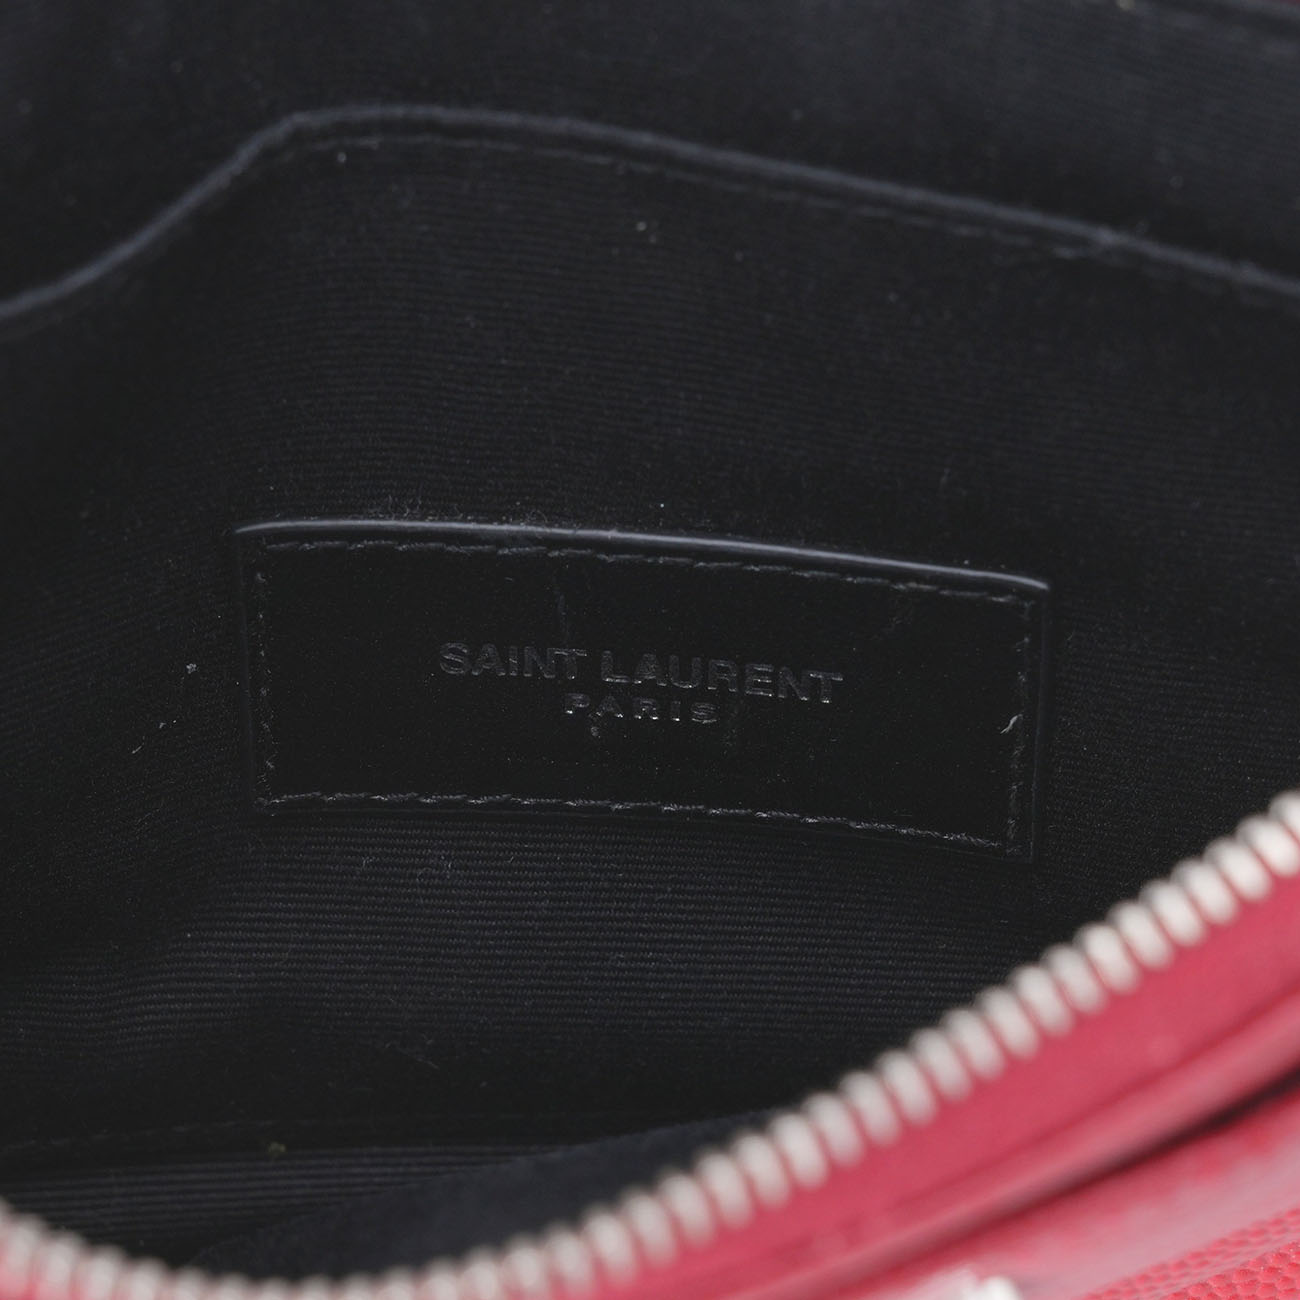 Yves Saint Laurent(USED)생로랑 372264 모노그램 플랩 장지갑